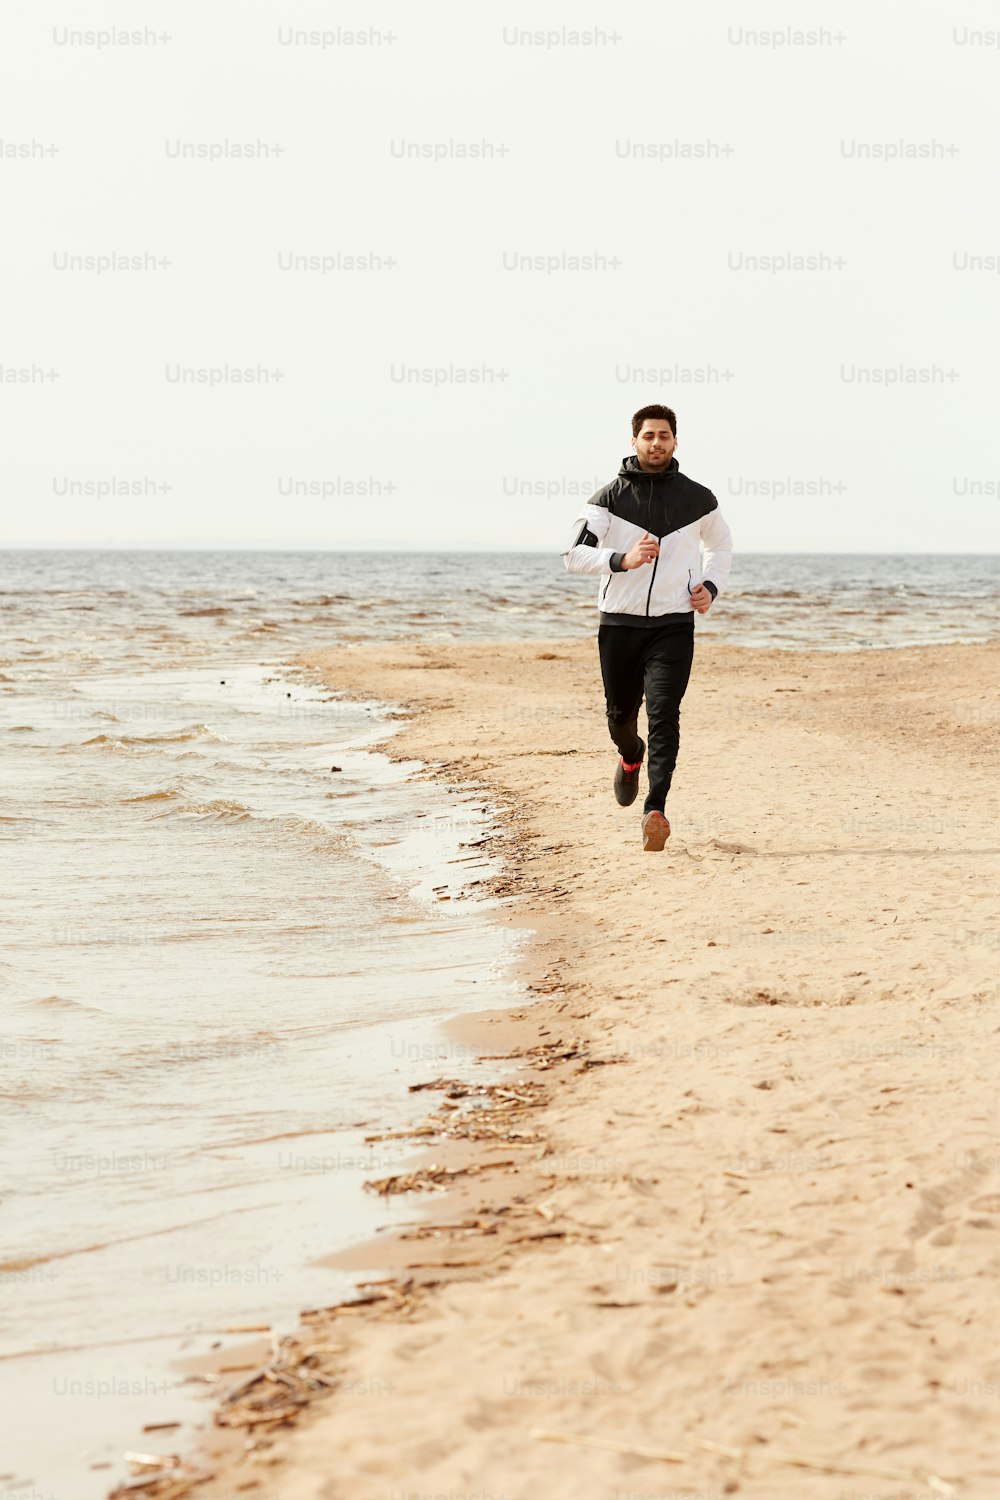 涼しい夏の日や朝に海岸線沿いの砂浜を走るアクティブウェアを着た若いスポーツマン